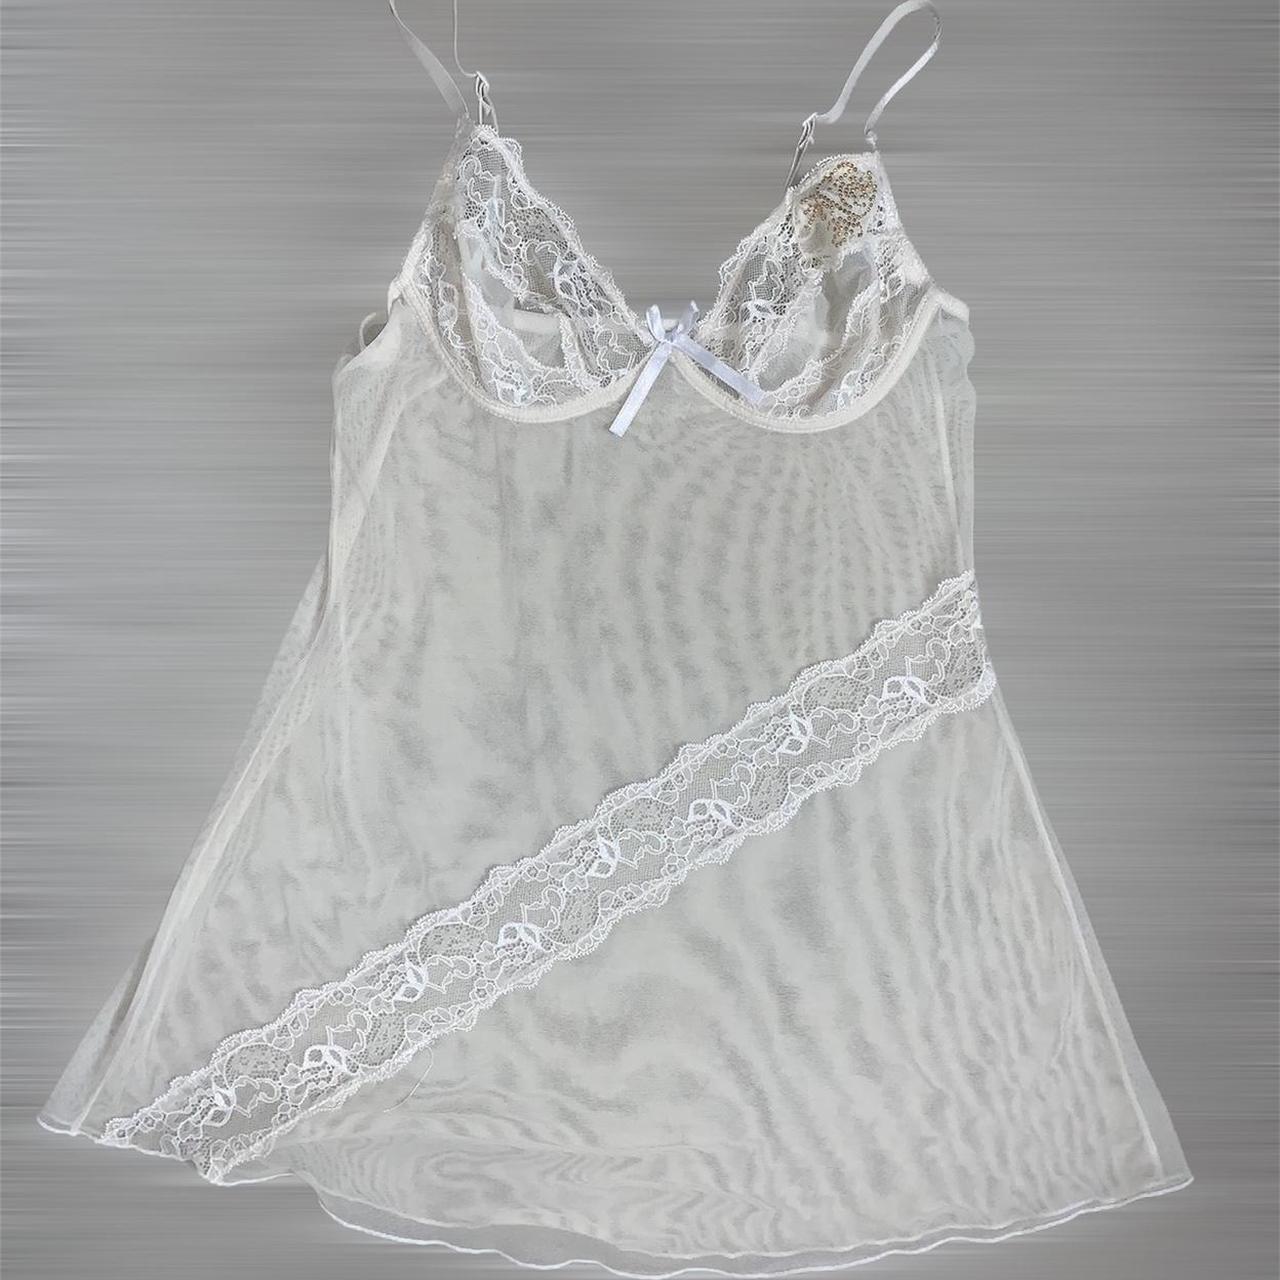 Vintage 90s white mesh lace fairycore slip lingerie dress